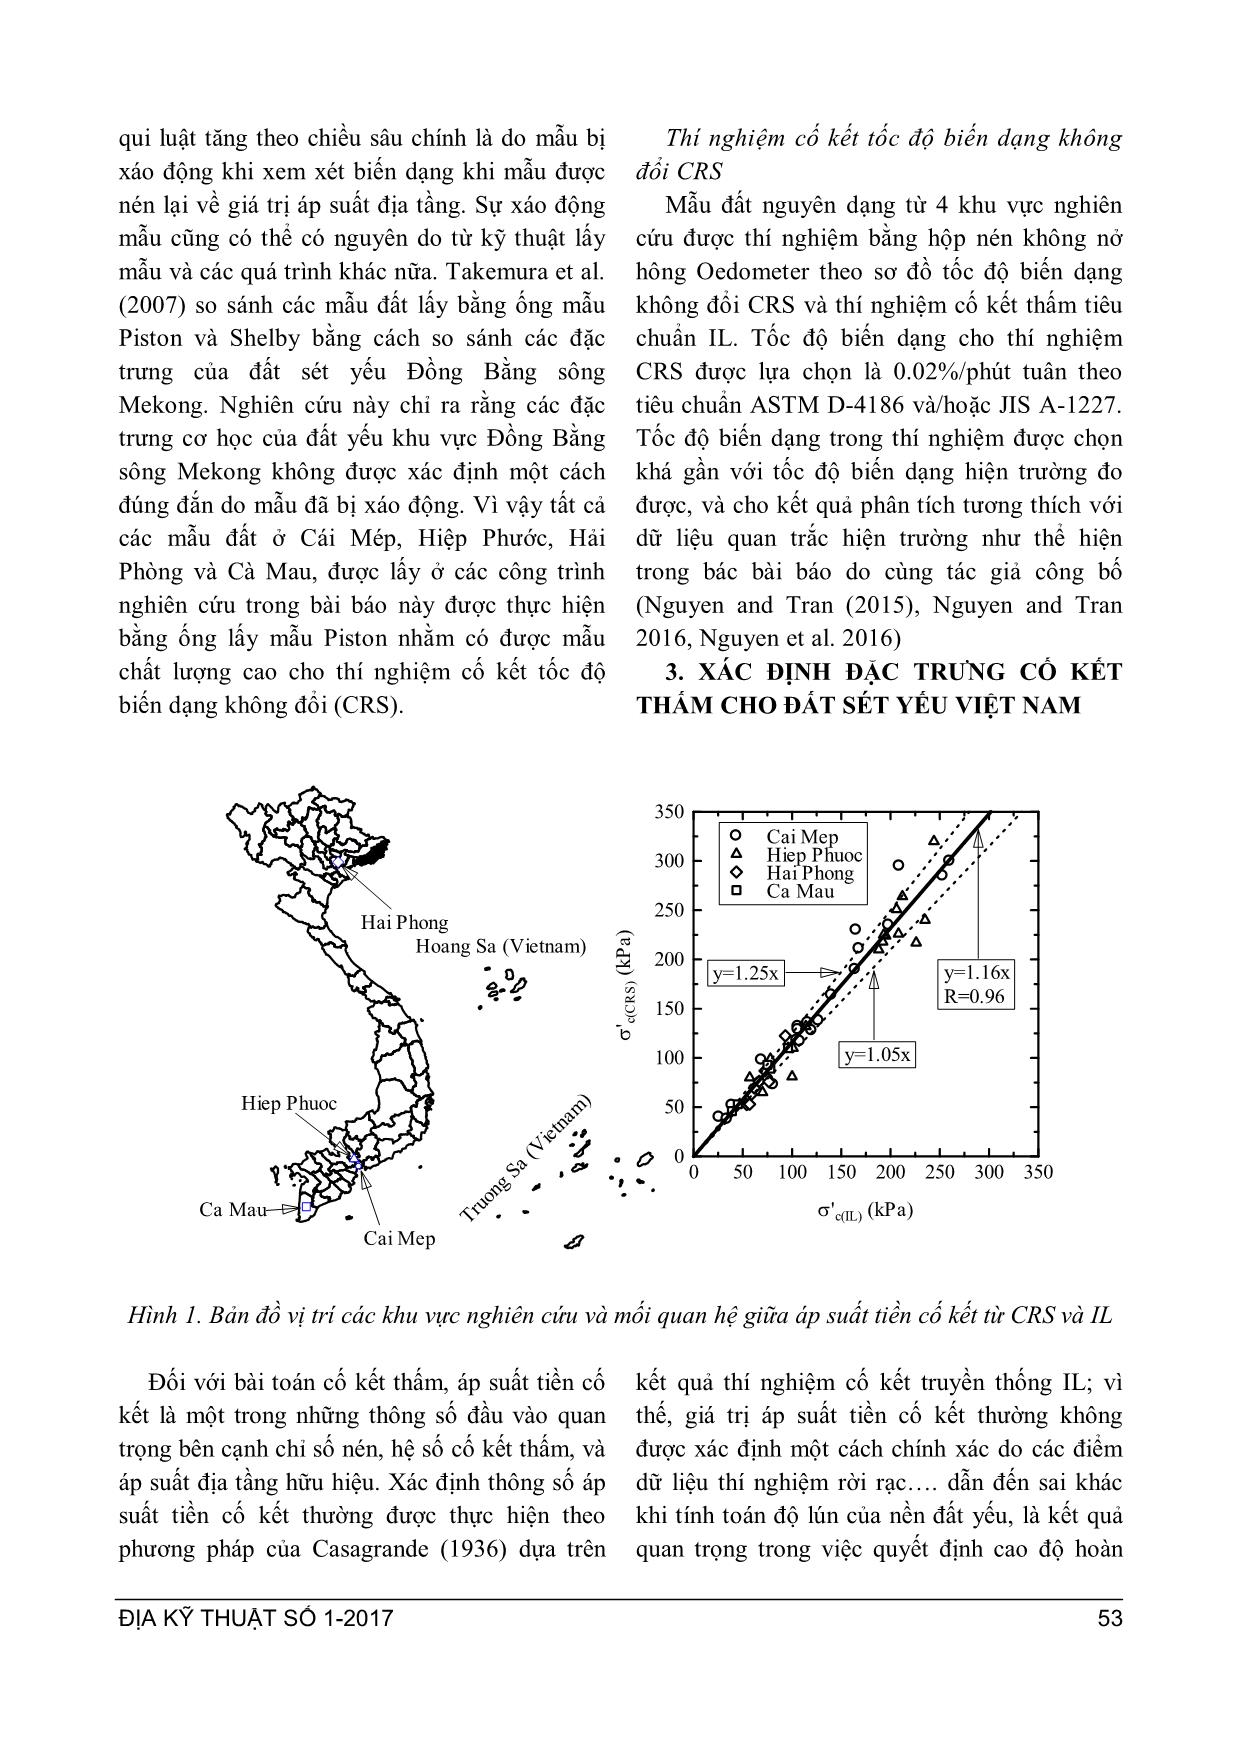 Xác định đặc trưng đất sét yếu Việt Nam theo thí nghiệm cố kết tốc độ biến dạng không đổi sử dụng trong phân tích bài cố kết thấm trang 3